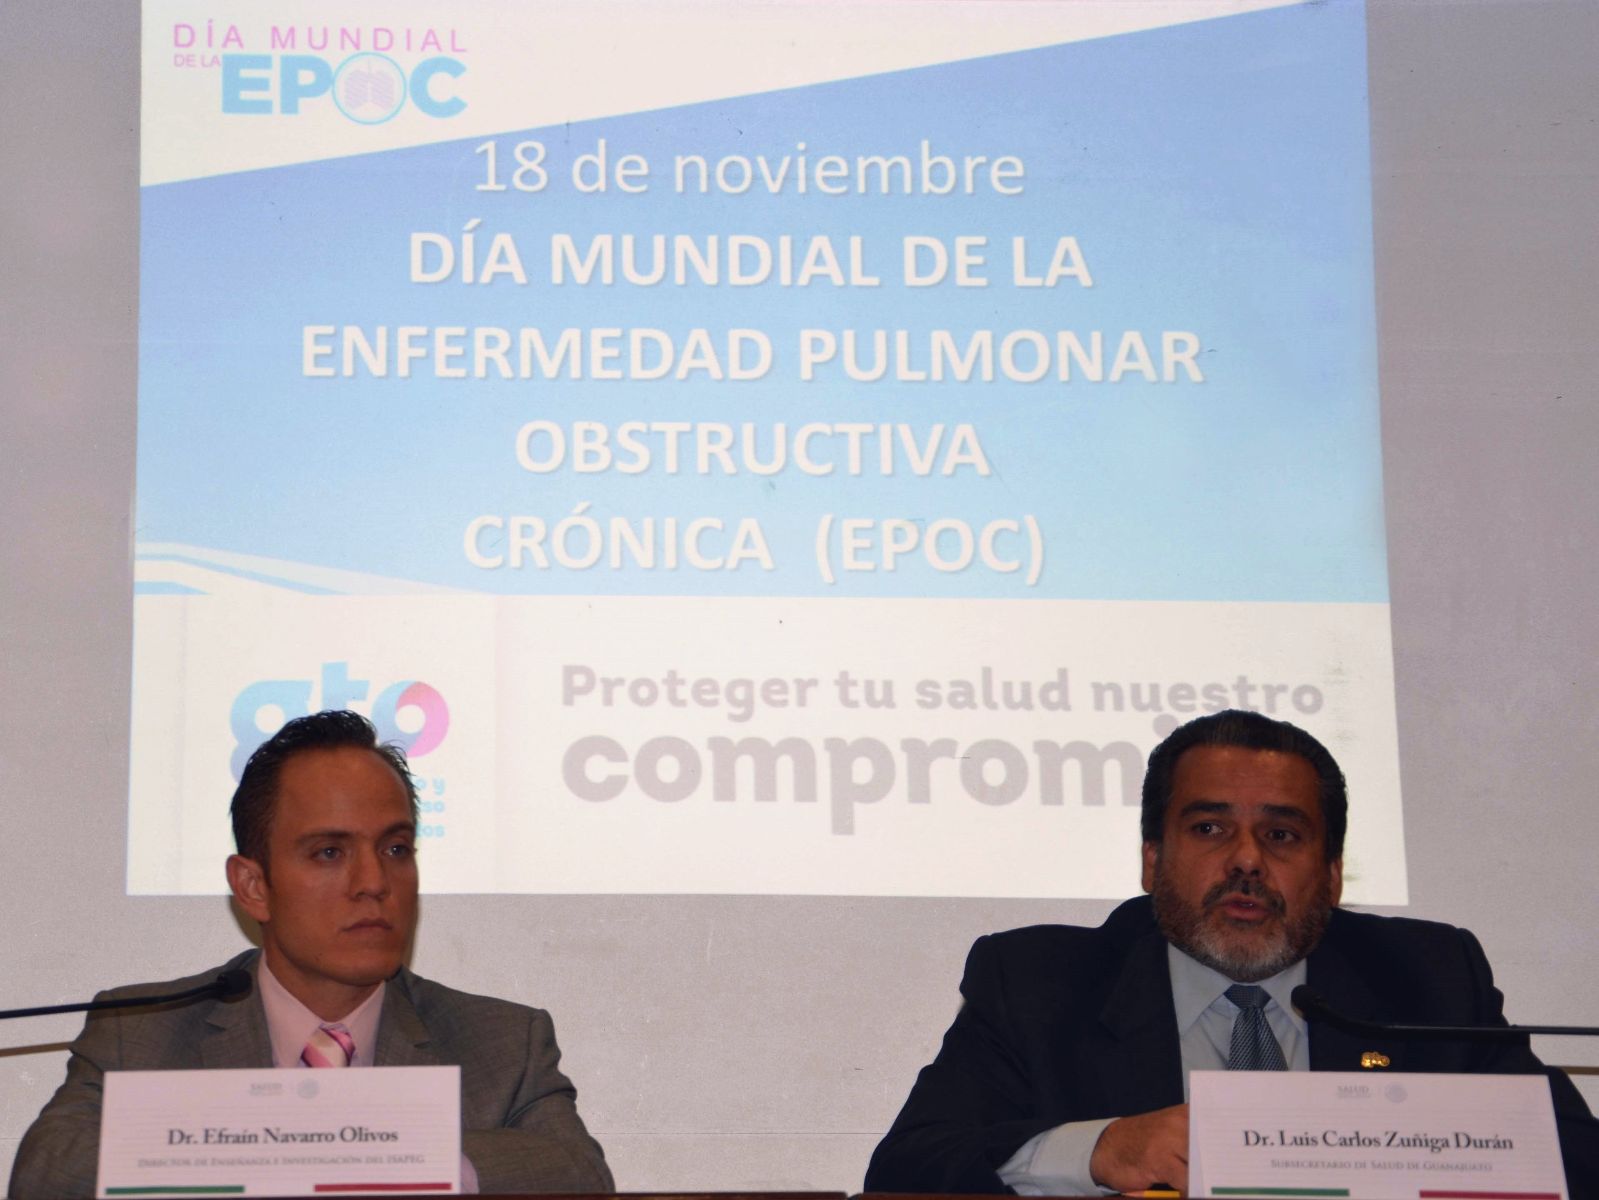 A la izquierda Efraín Navarro Olivos y a la derecha Luis Carlos Zúñiga Durán atras una proyección Día Mundial EPOC 18 de noviembre